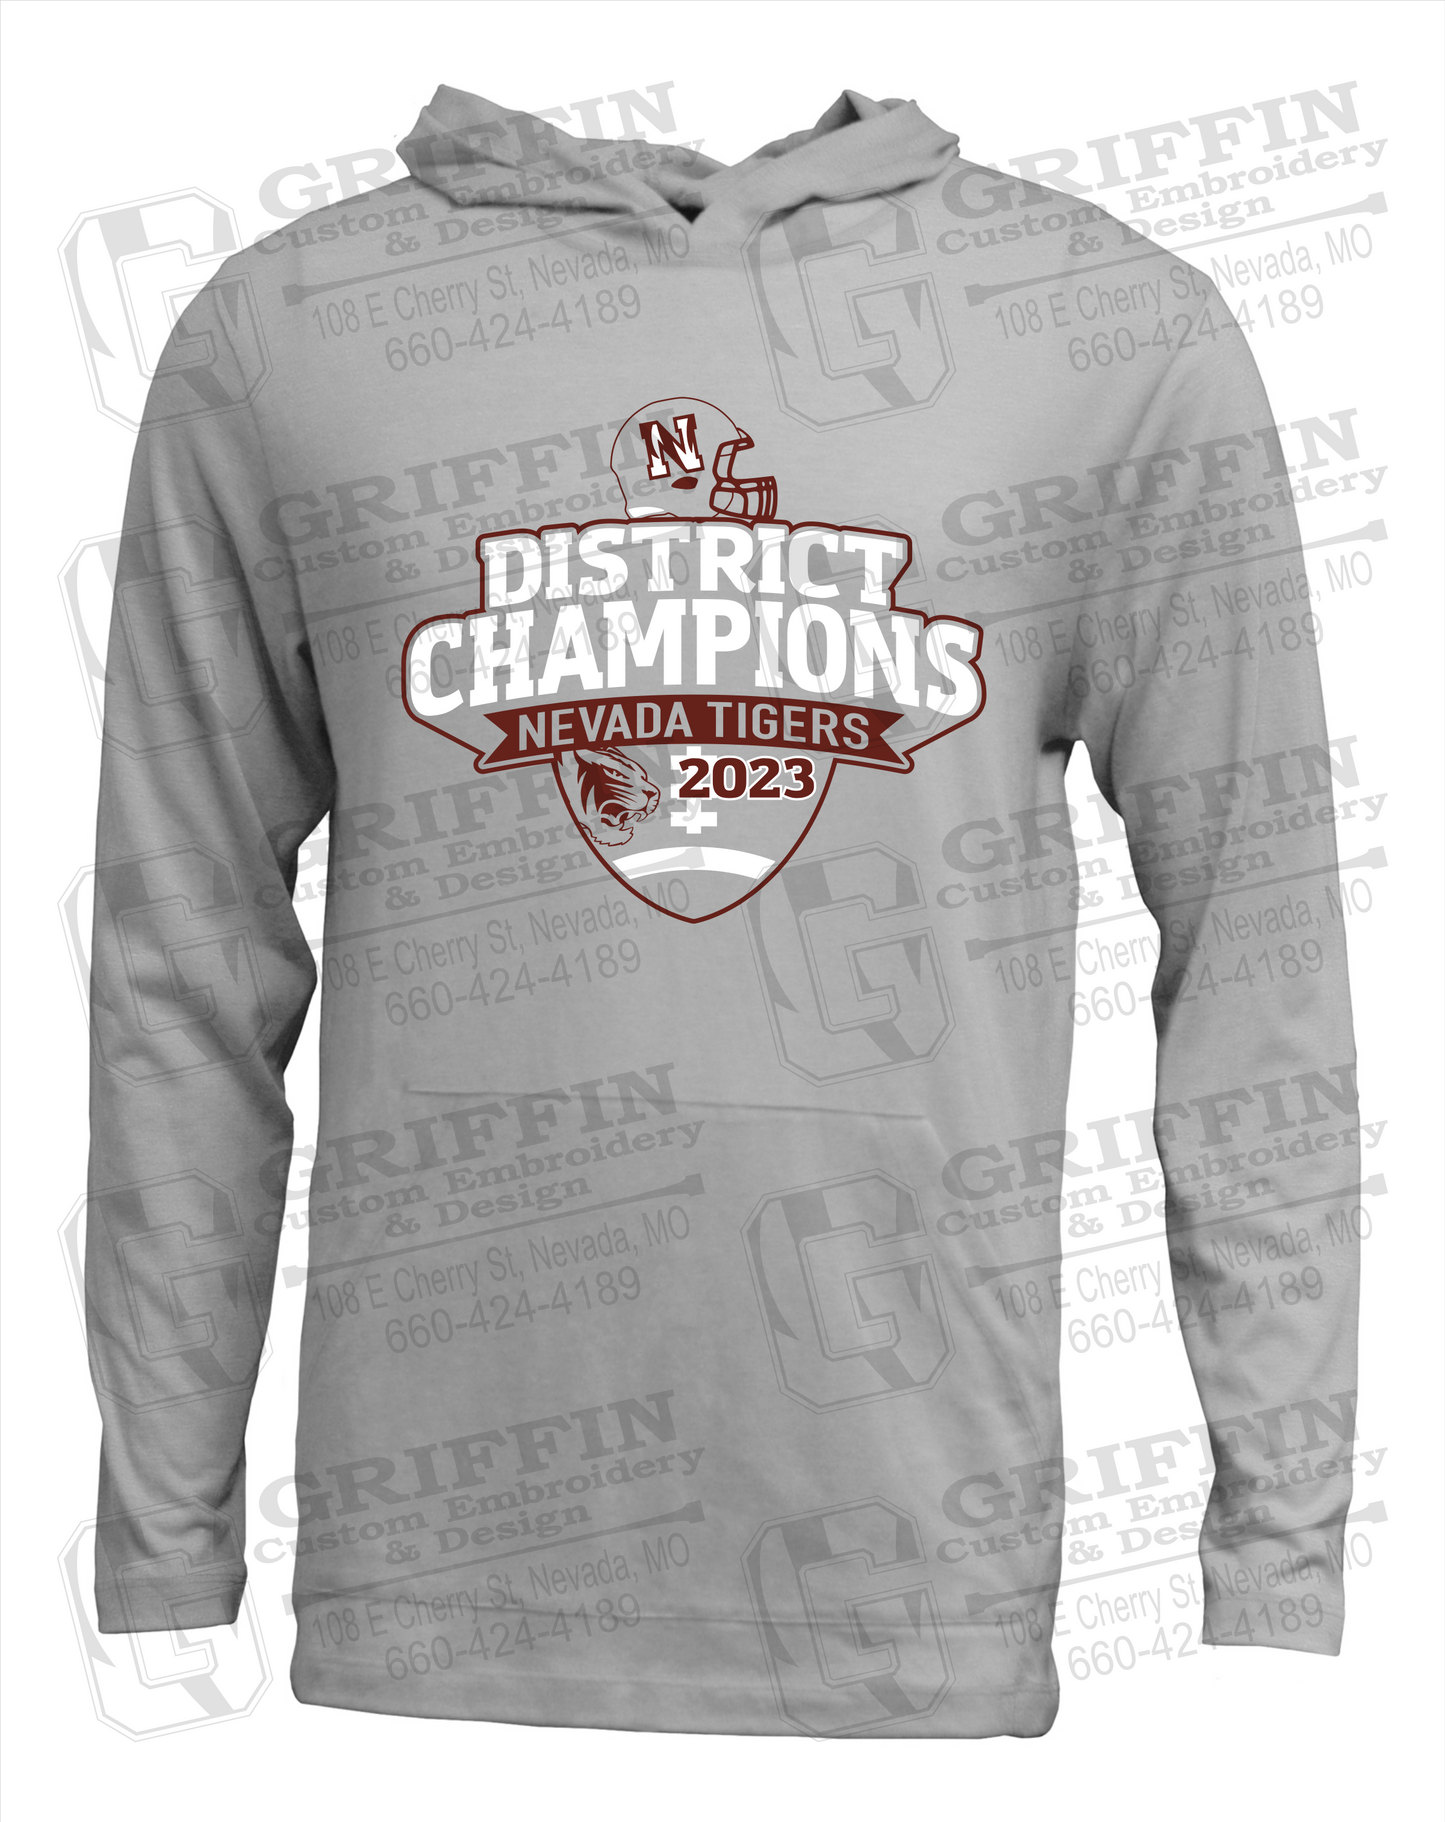 Soft-Tek T-Shirt Hoodie - Football 2023 District Champions - Nevada Tigers 24-L